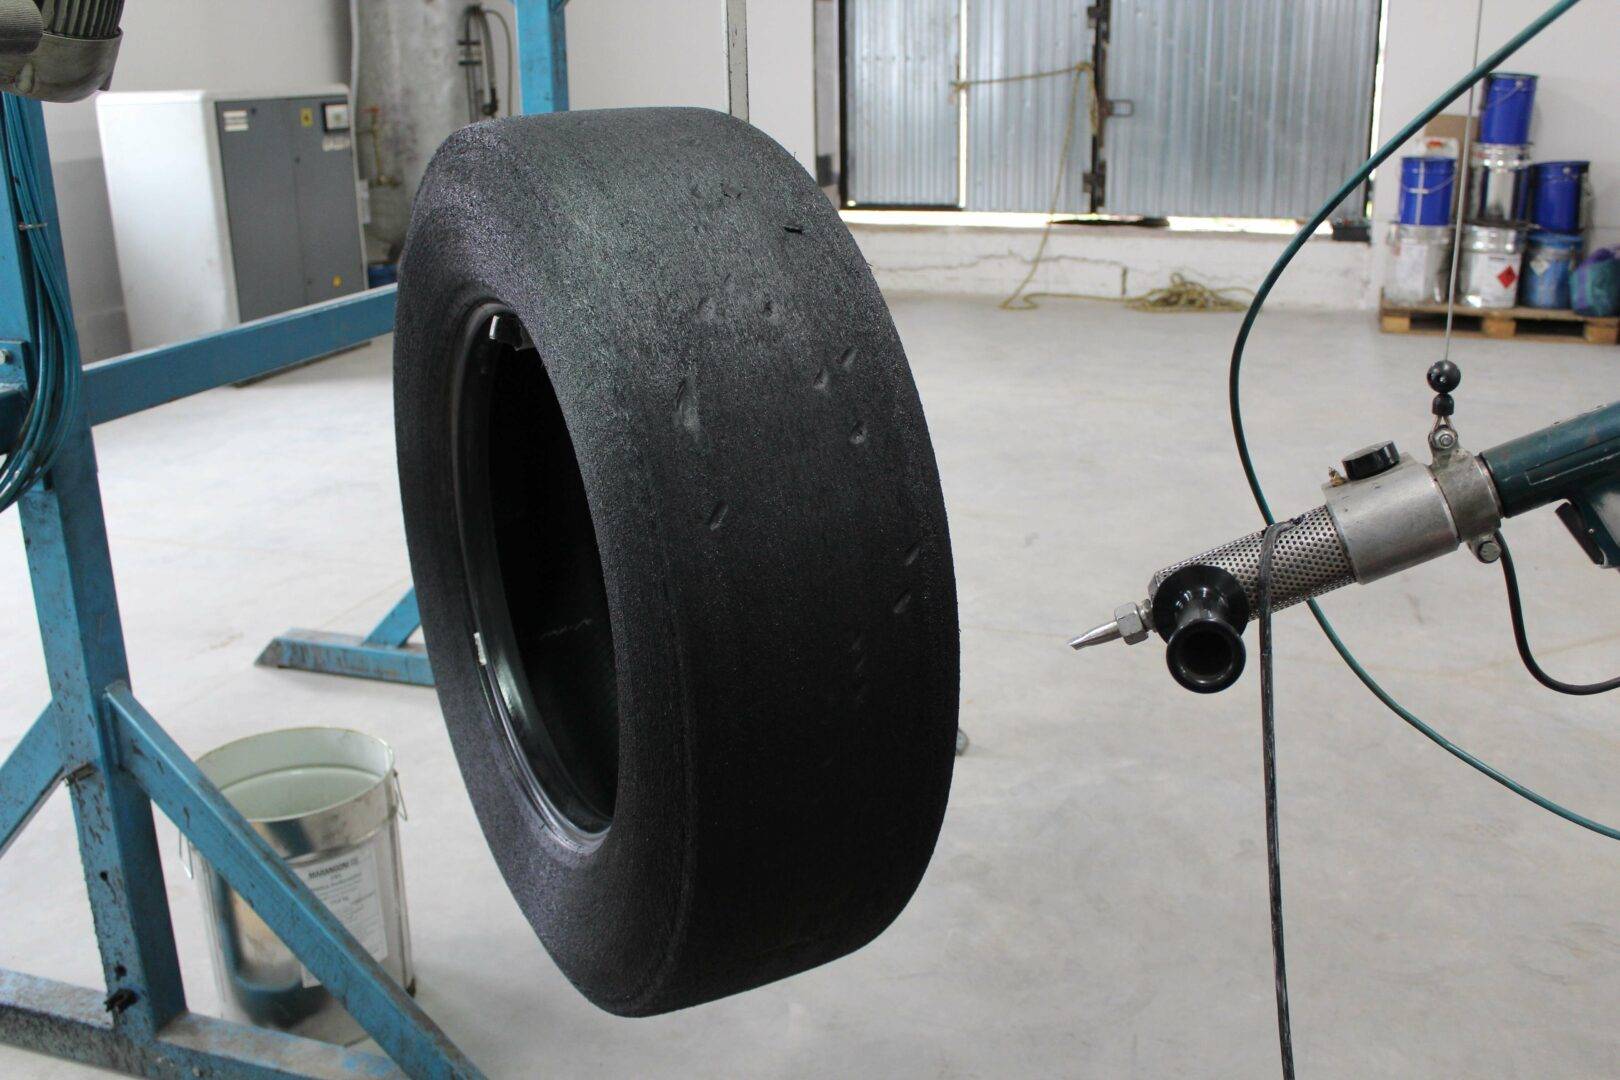 Восстановленные шины, шина наварка, восстановленный протектор шин, можно ли их использовать. безопасно ли использовать восстановленные шины. способы восстановления покрышек.